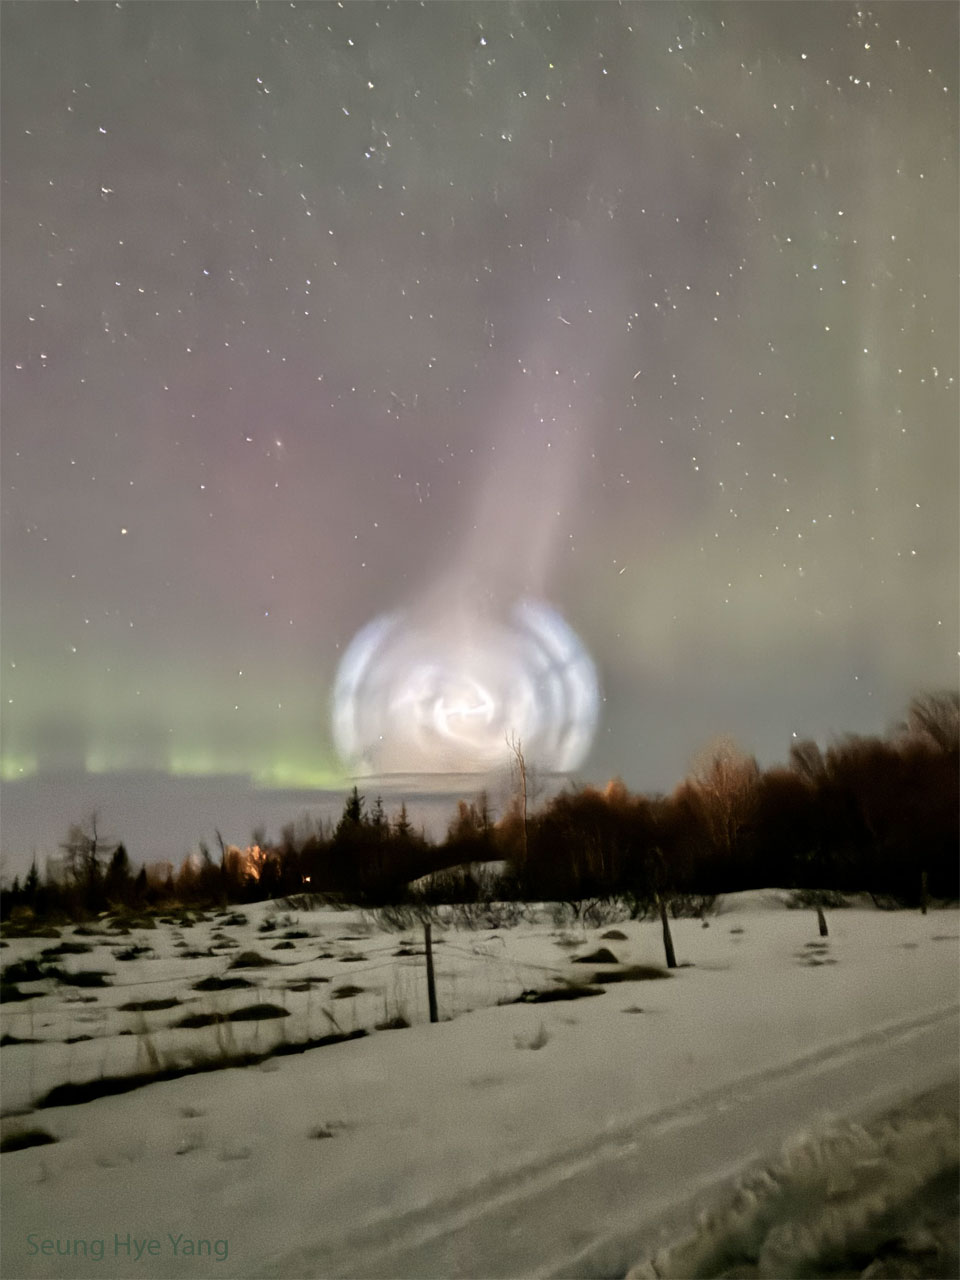 دود کهکشان مارپیچی شکل یک راکت